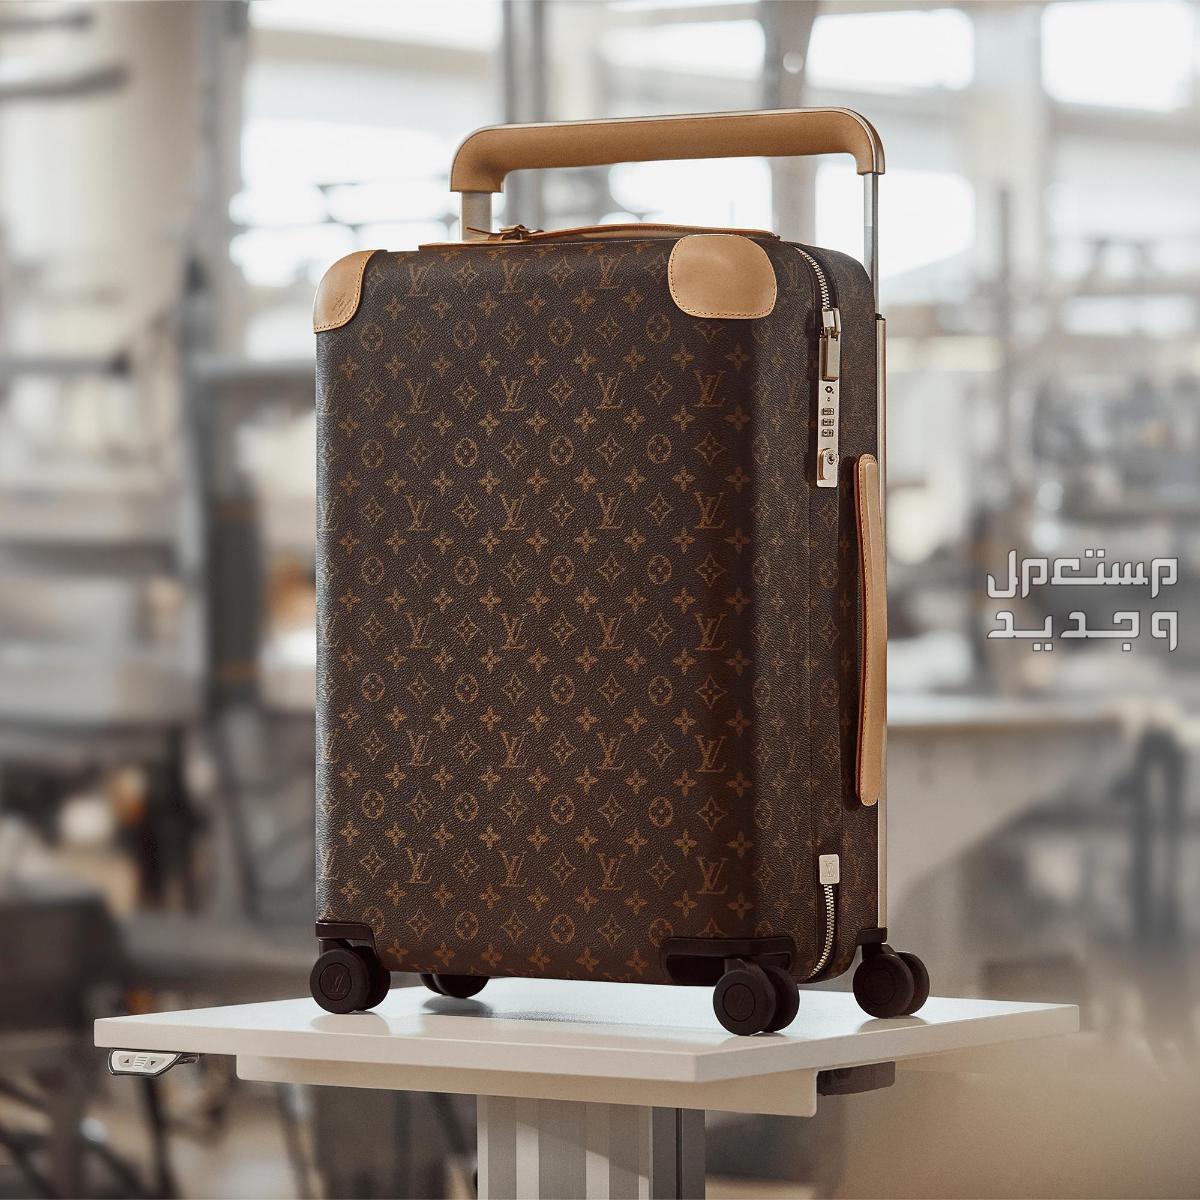 تعرف على أغلى حقيبة سفر في العالم في سوريا تفاصيل حقيبة سفر Louis Vuitton Horizon 50